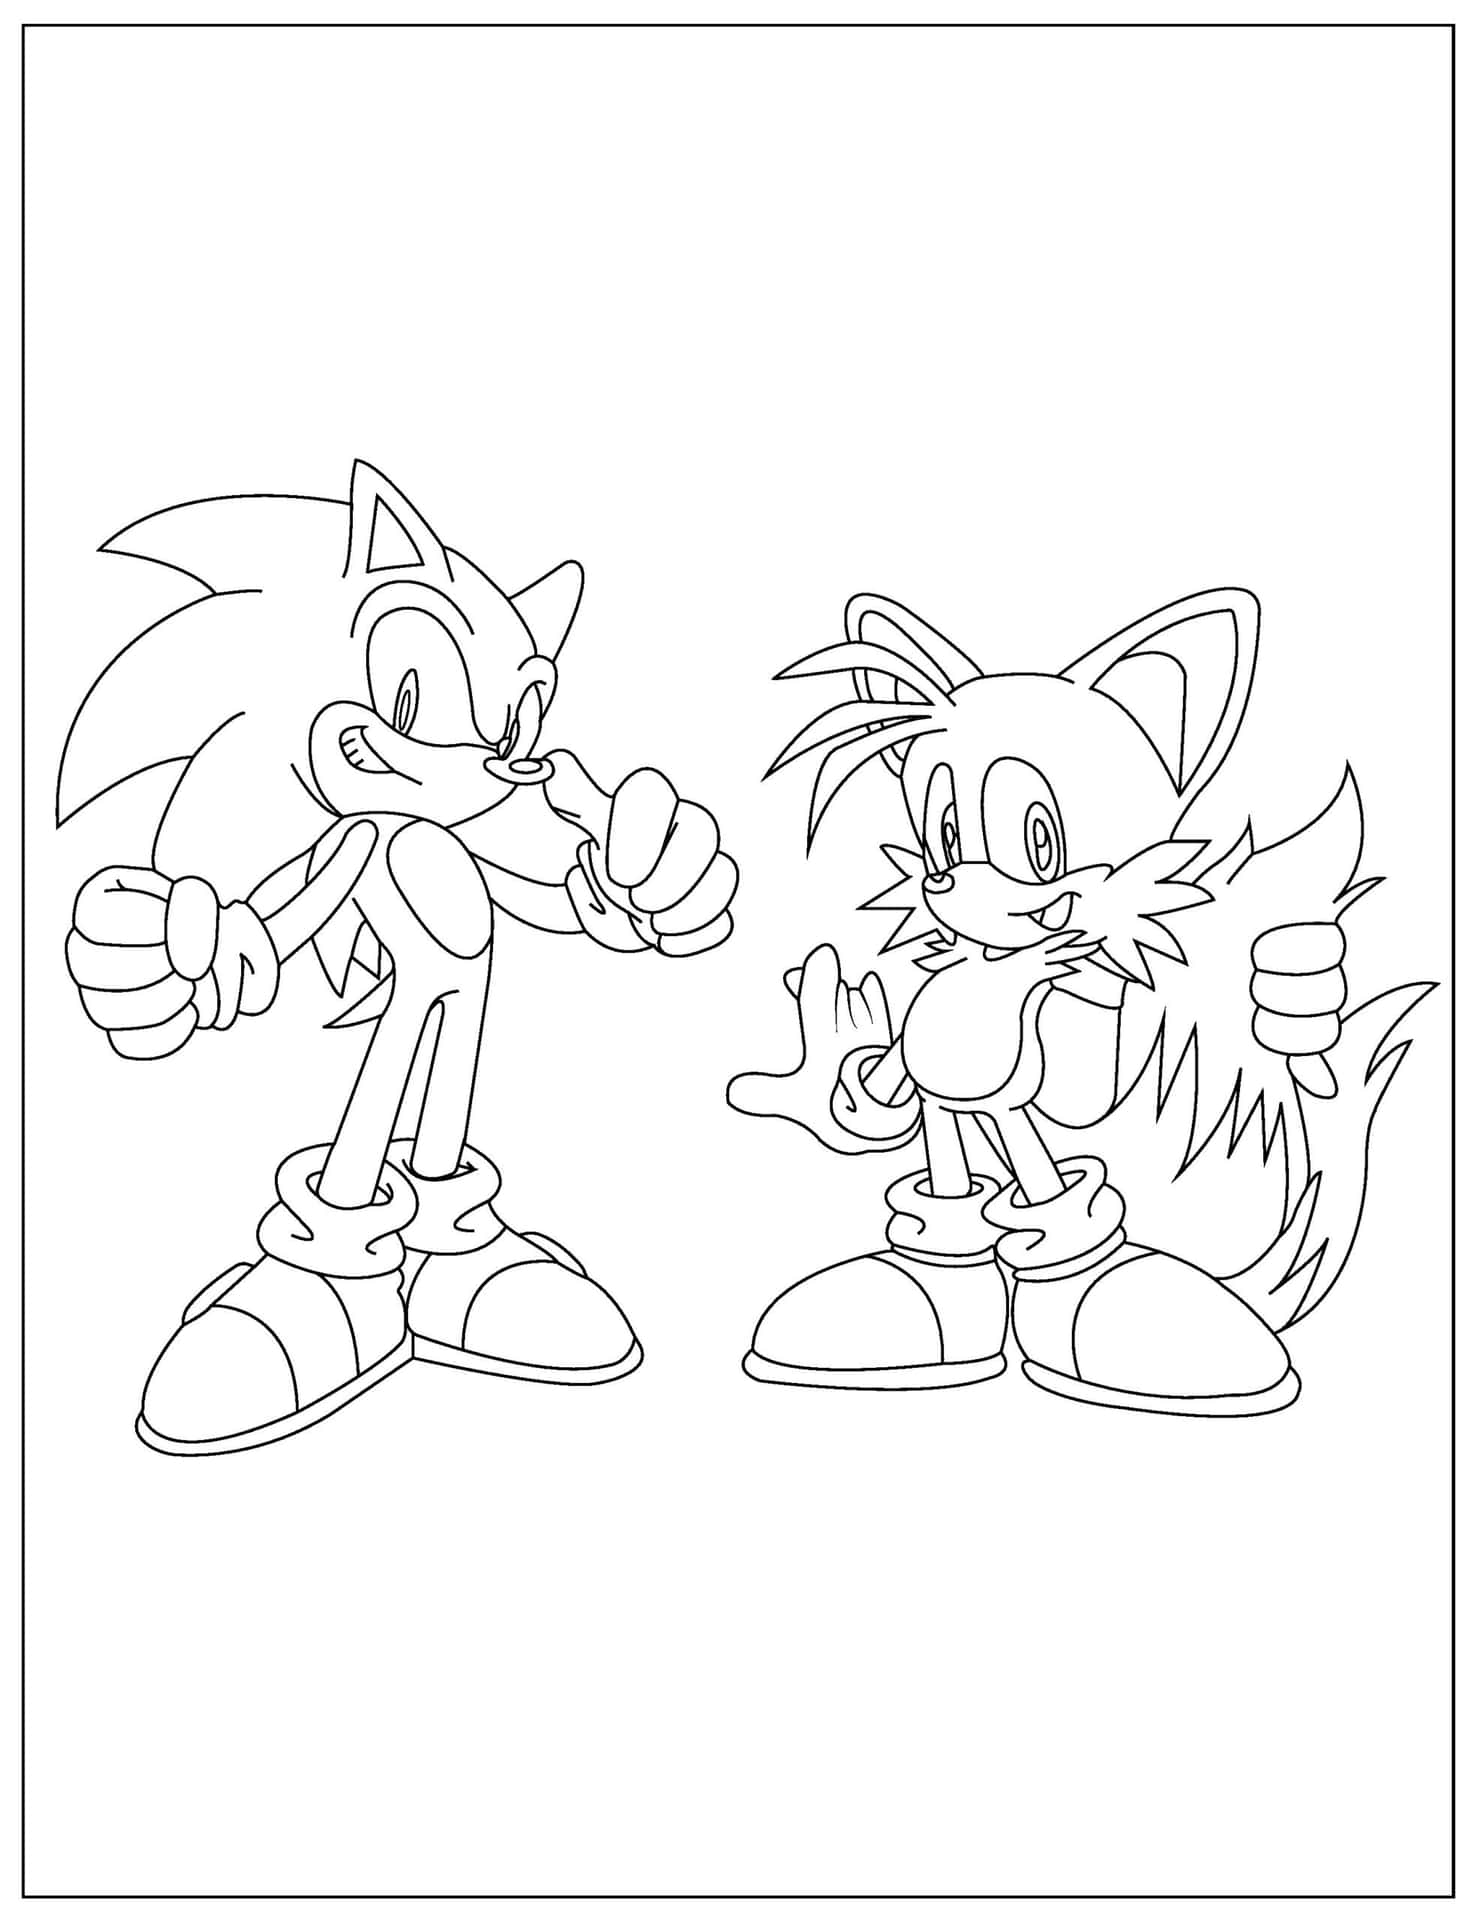 Imagende Sonic Y Tails Sonriendo Para Colorear.